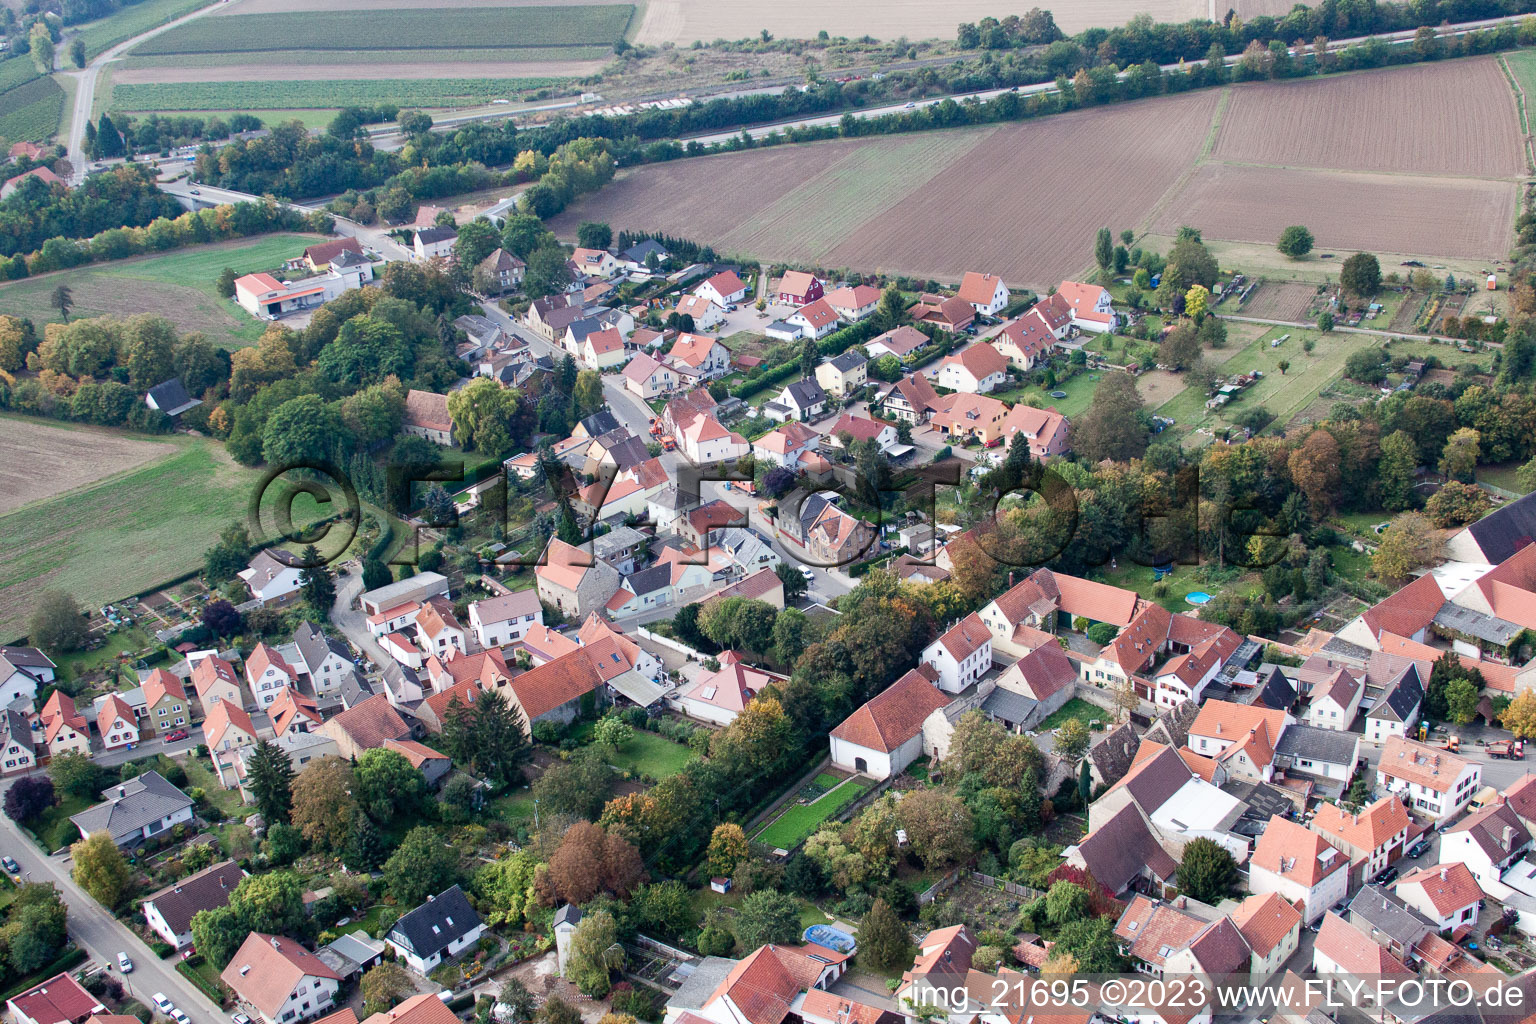 Eppelsheim im Bundesland Rheinland-Pfalz, Deutschland von der Drohne aus gesehen